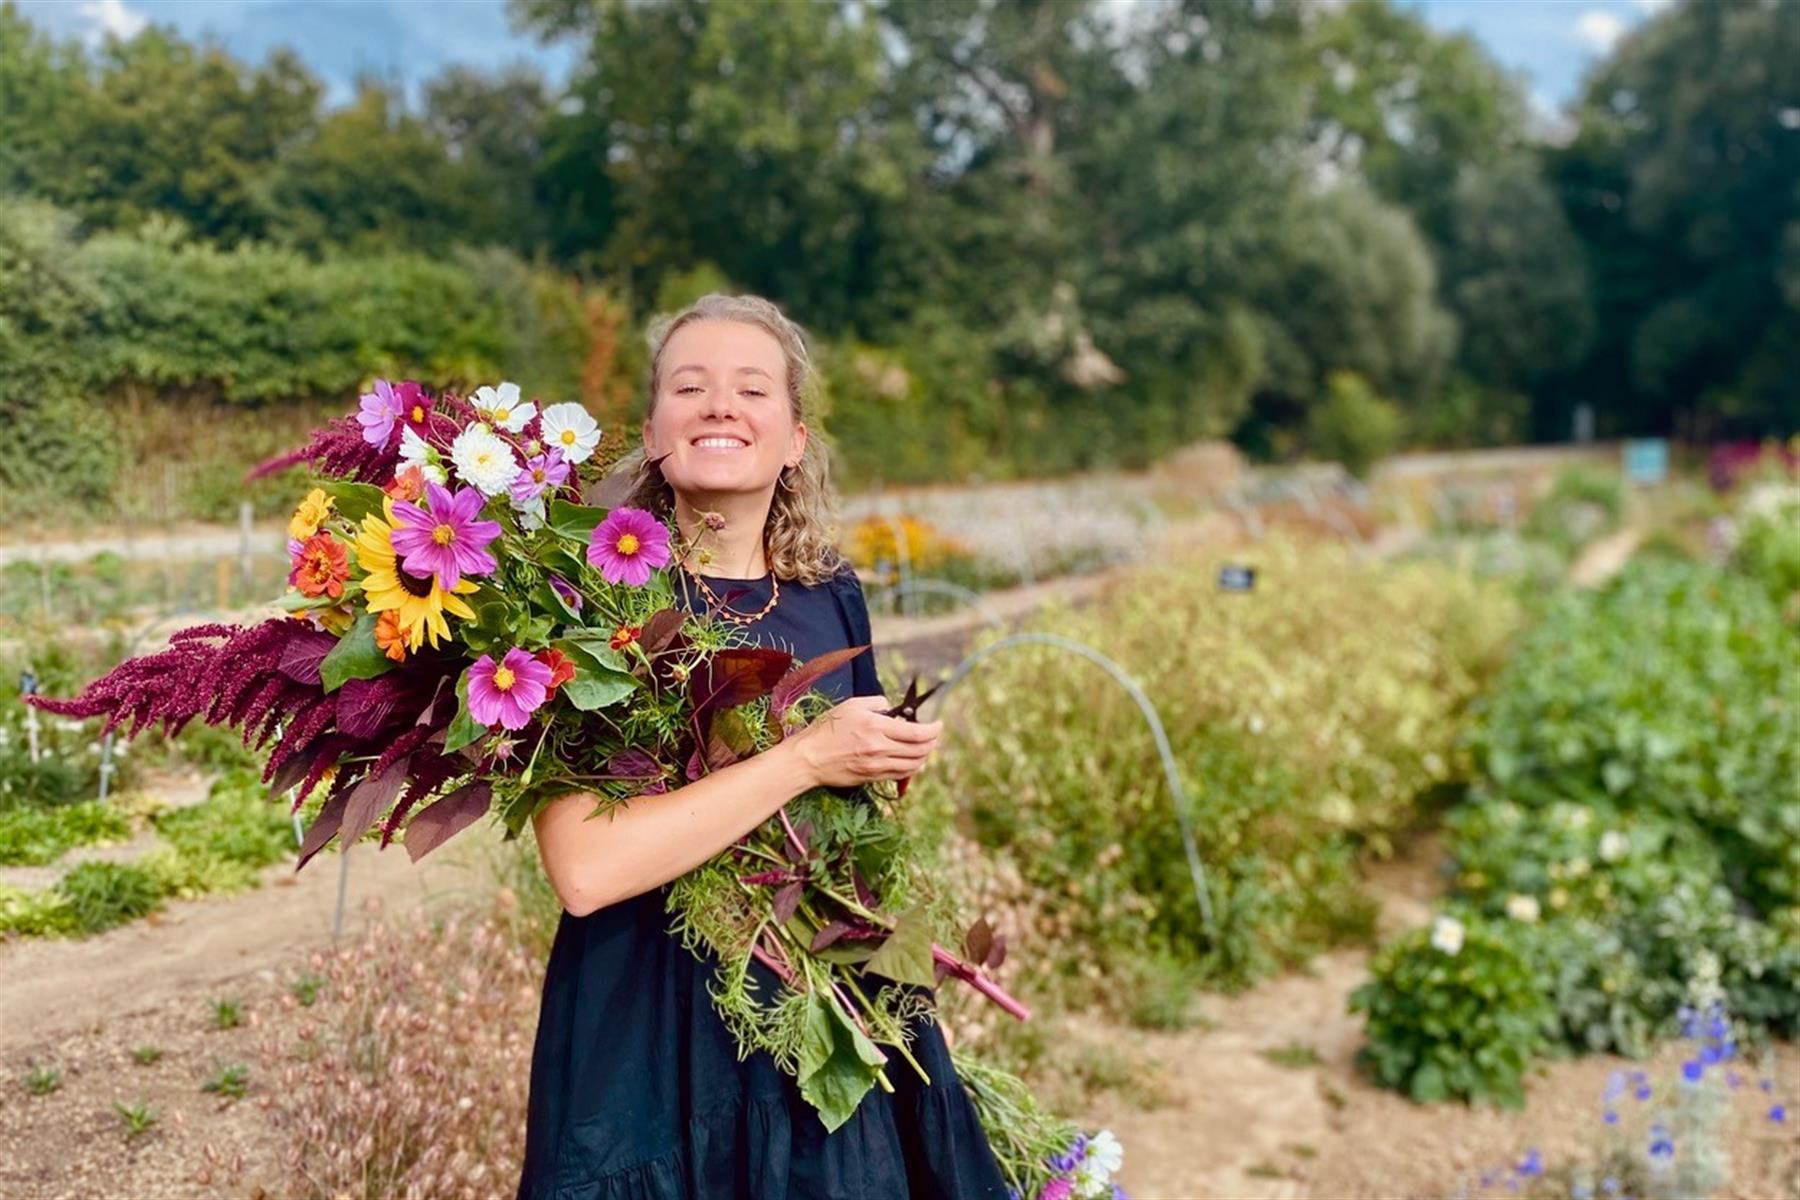 FleurAkker is Groot Eiland's self-picking flower farm